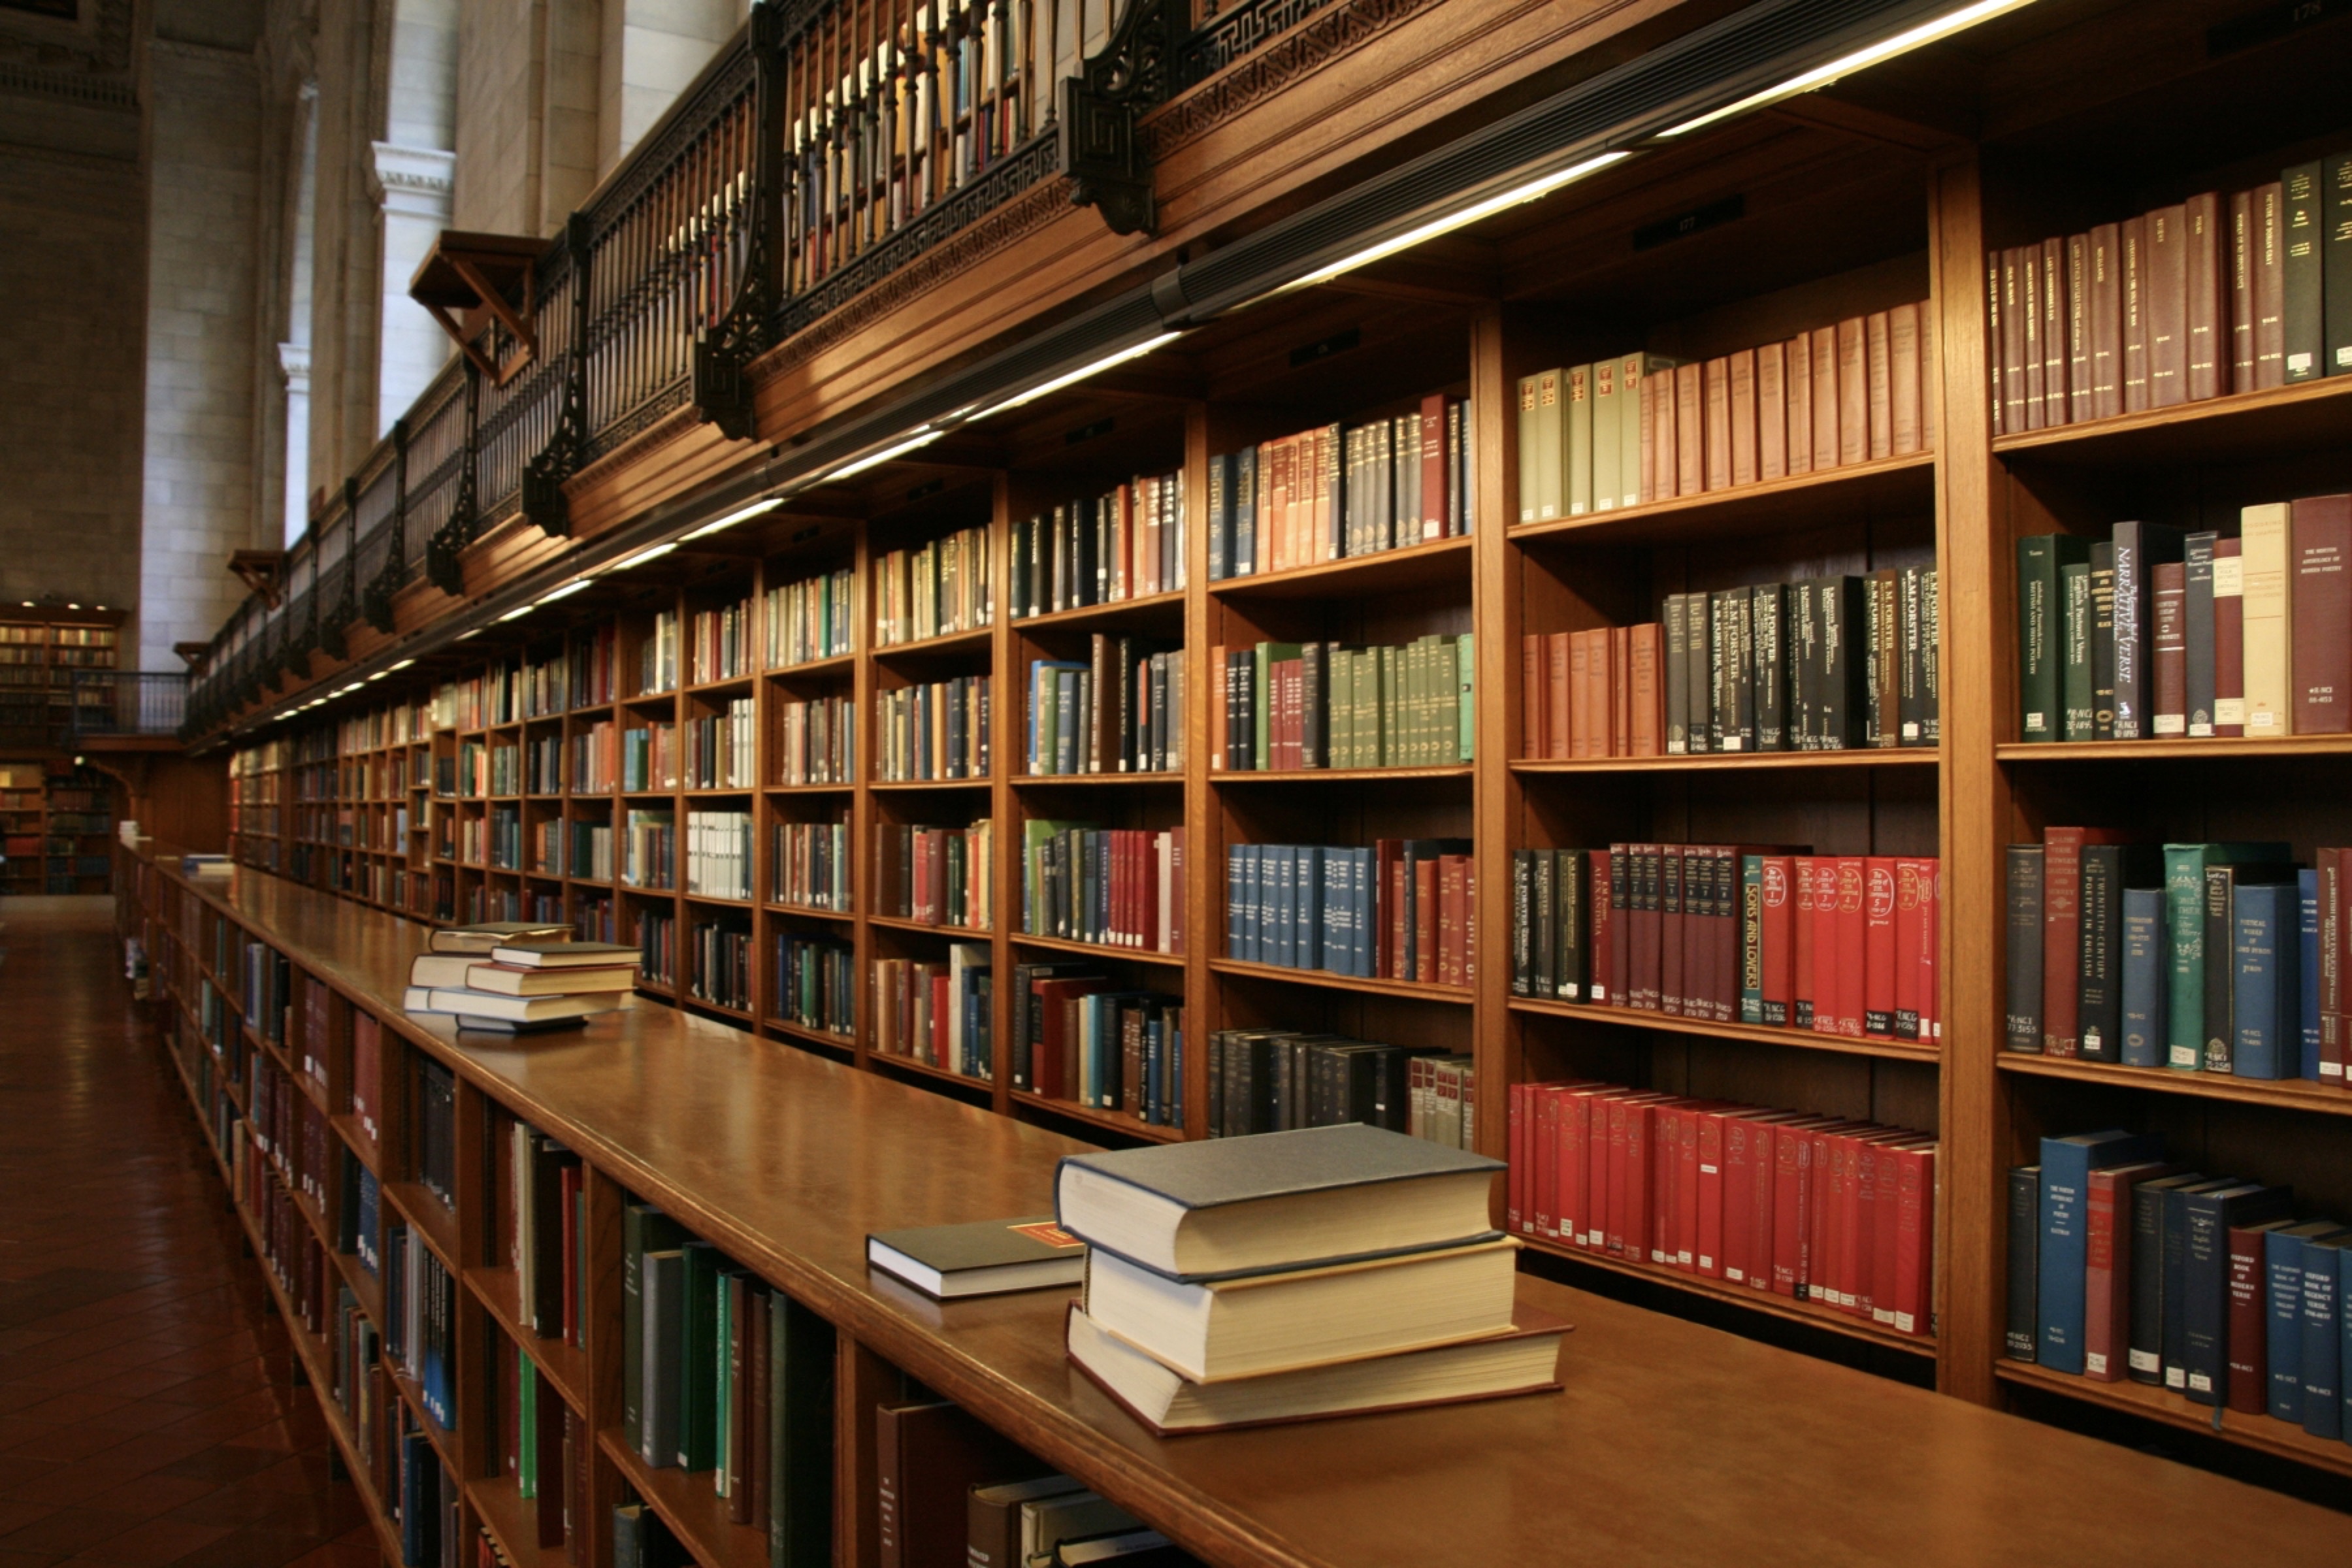 Livros enfileirados em uma biblioteca. (Reprodução/Timetrax23 CC BY-SA 2.0)